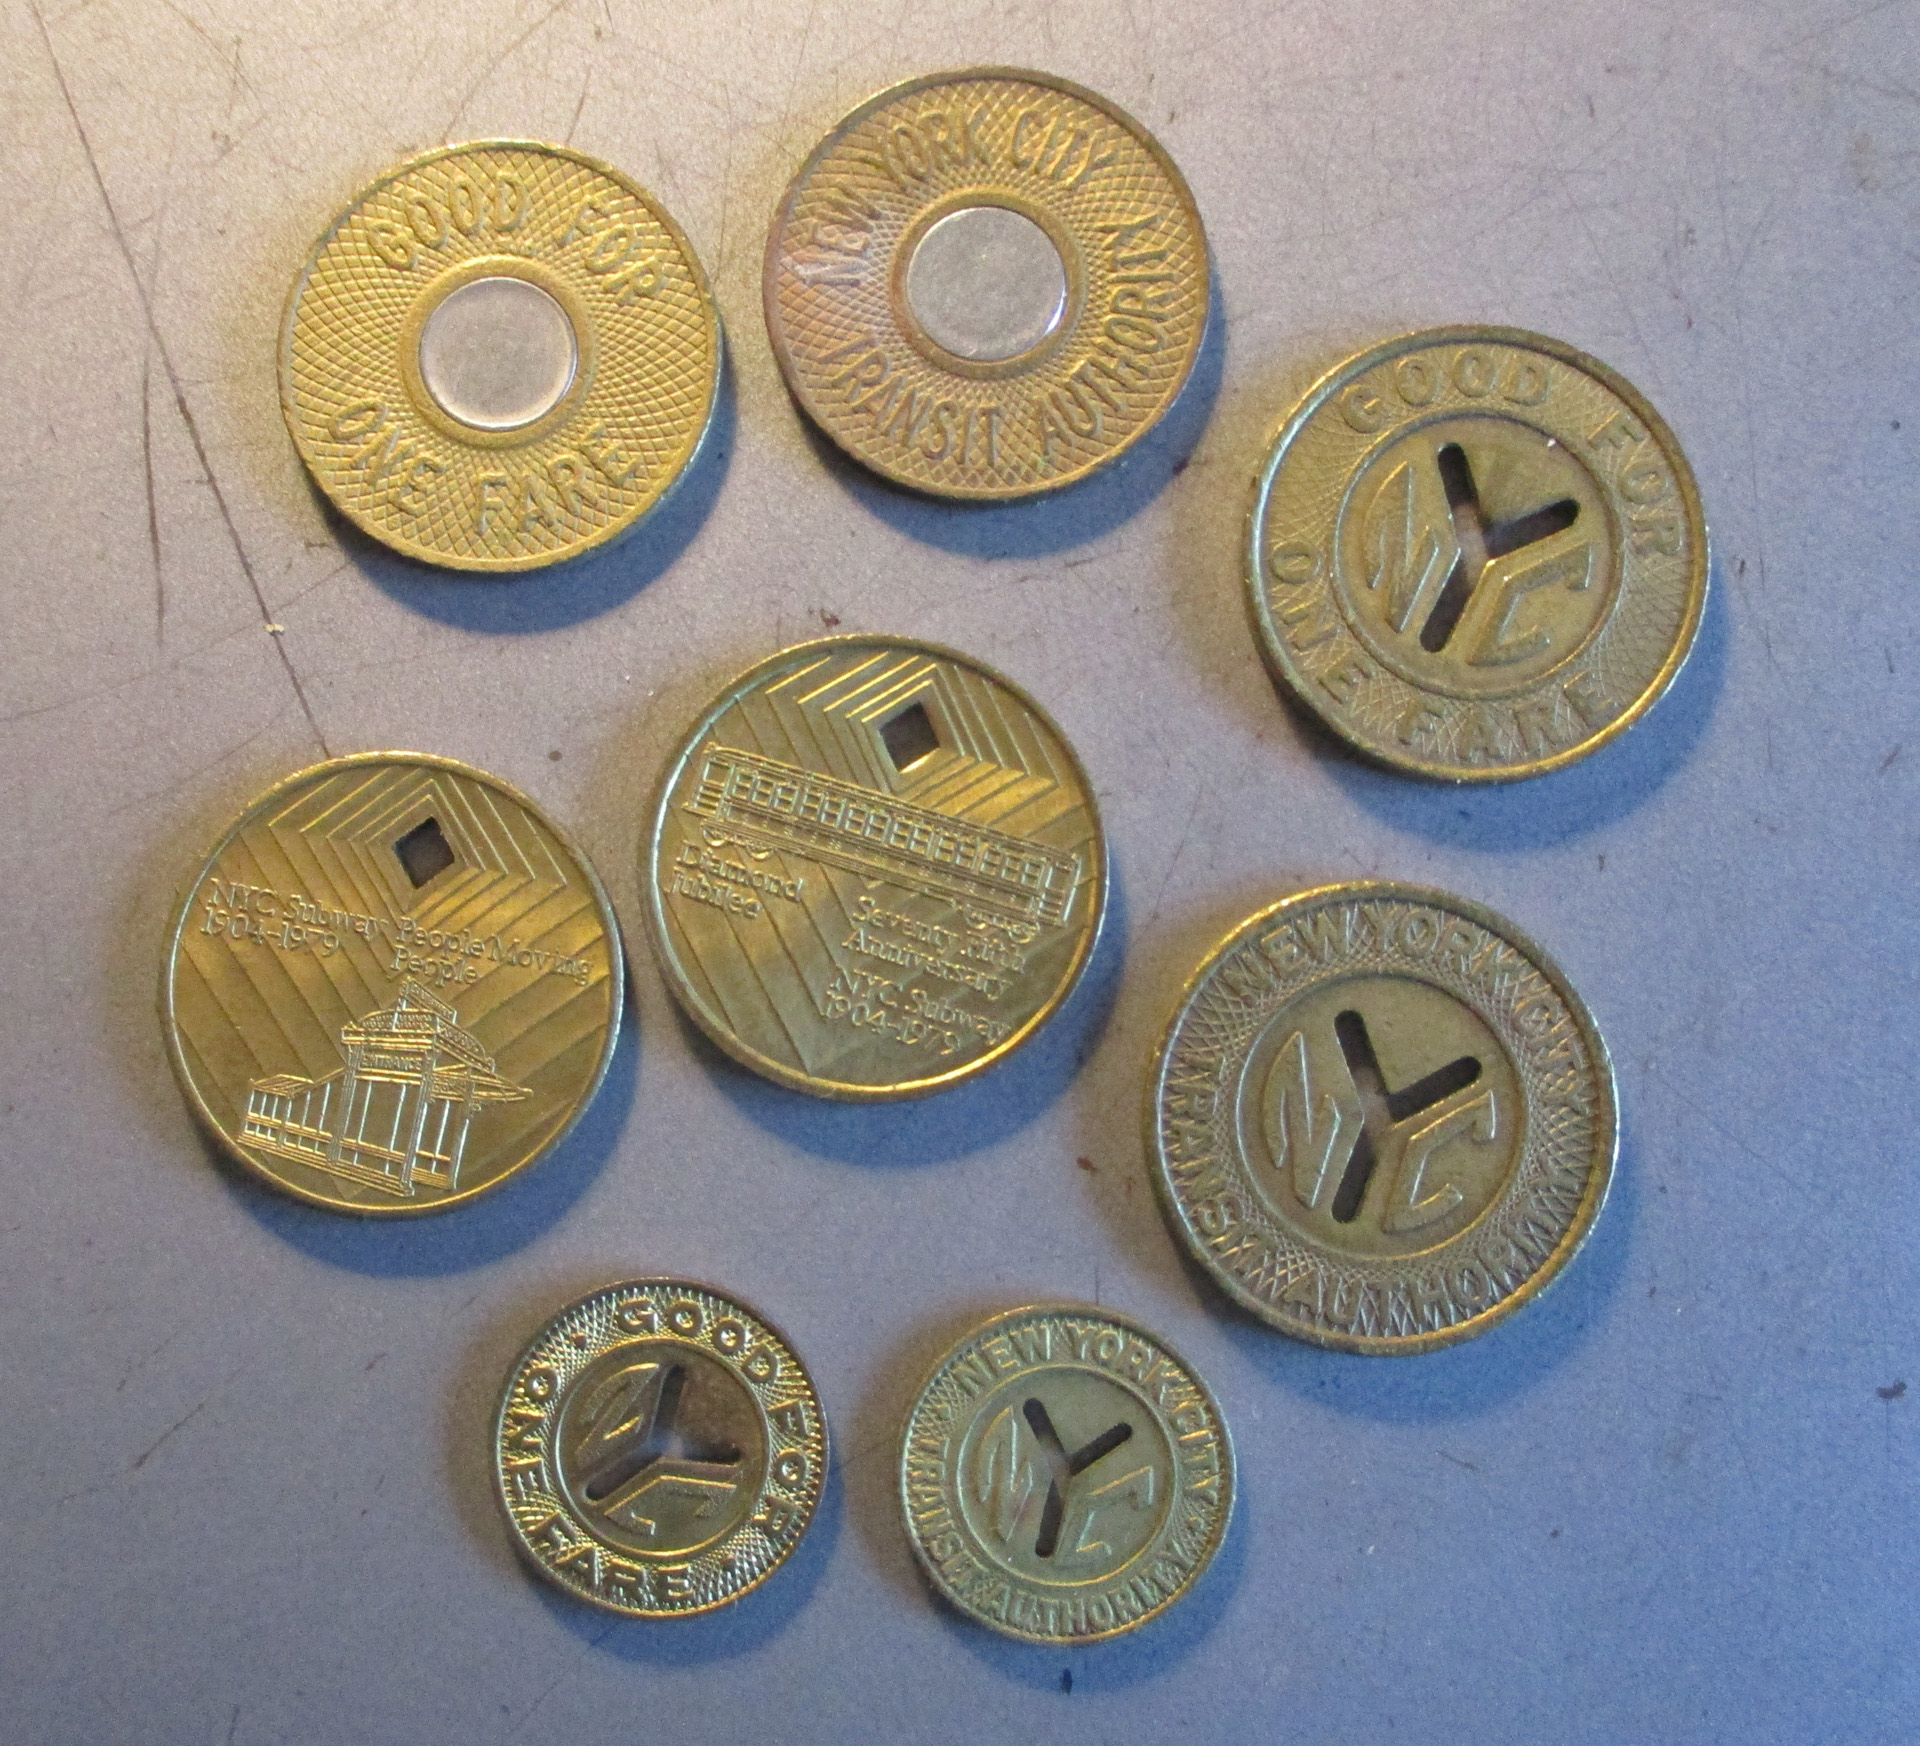 NYC Subway tokens